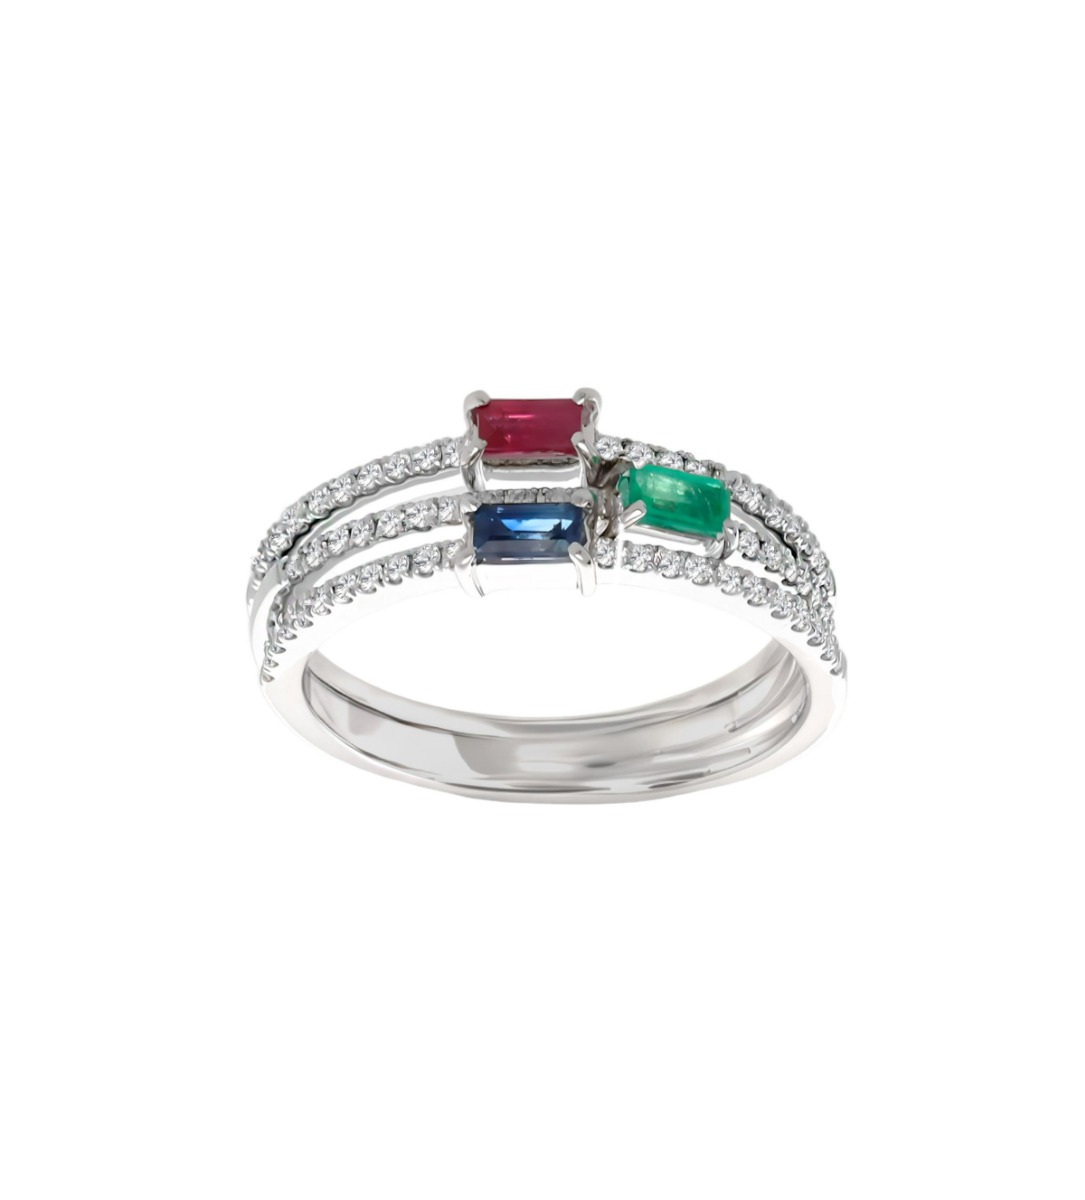 anillo oro blanco y diamantes con rubi esmeralda y zafiro, 3 anillos individuales para formar una joya única, foto 1